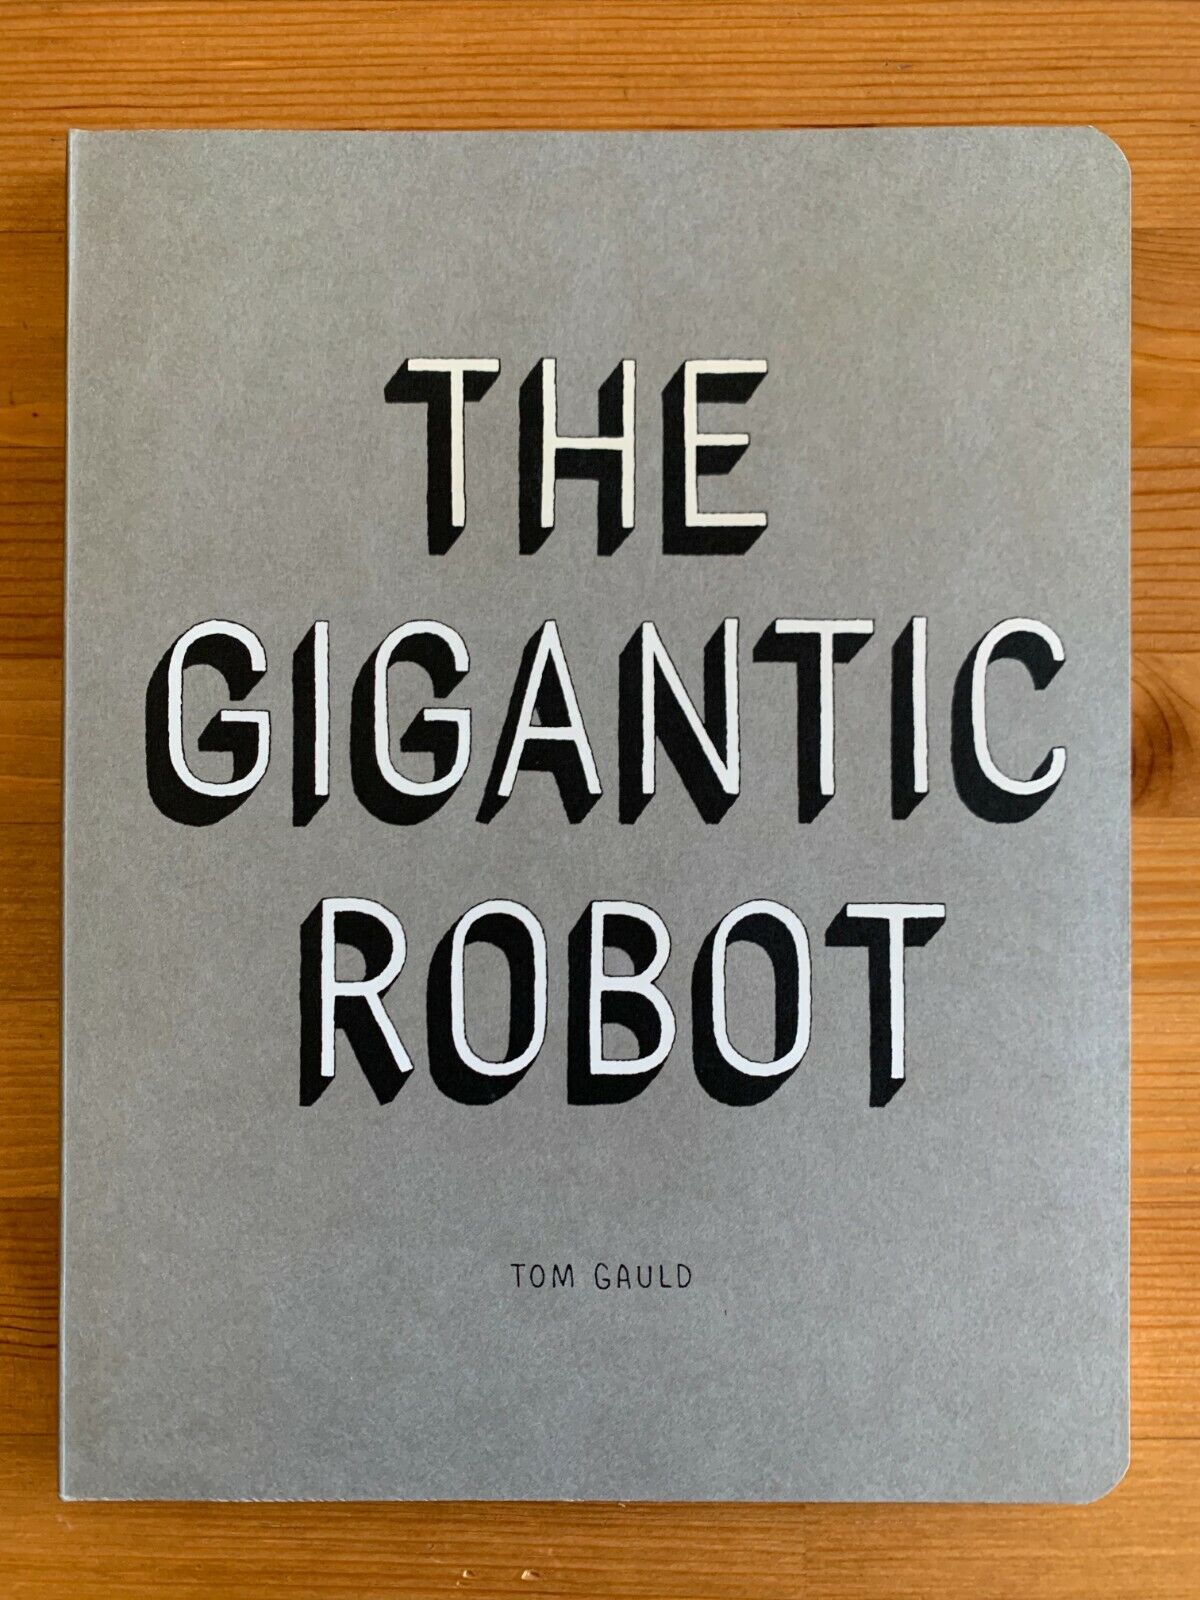 The Gigantic Robot - Tom Gauld - INSCRIBED